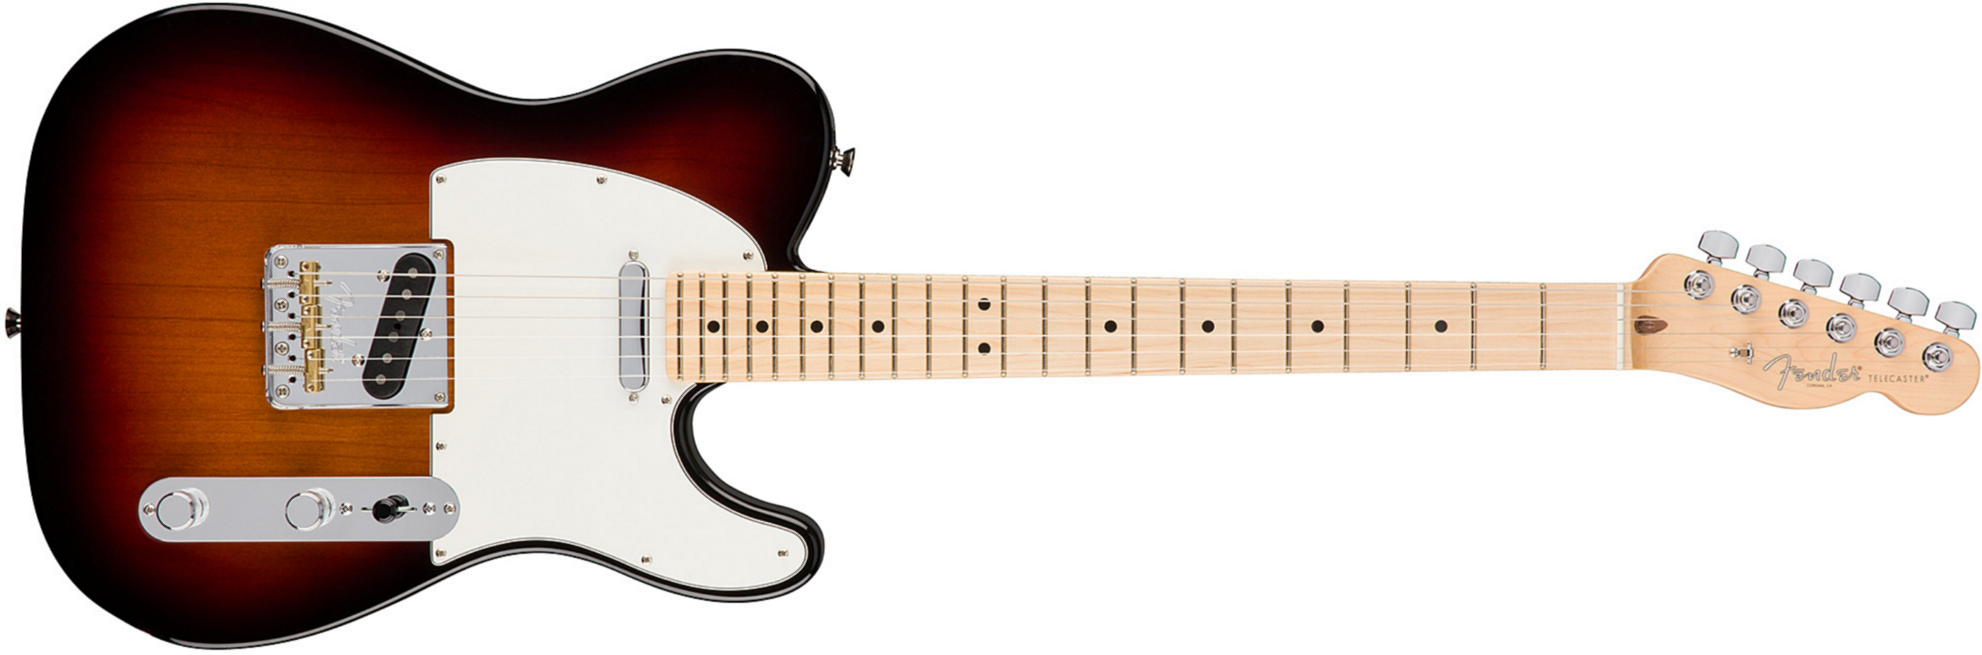 Fender Tele American Professional 2s Usa Mn - 3-color Sunburst - E-Gitarre in Teleform - Main picture